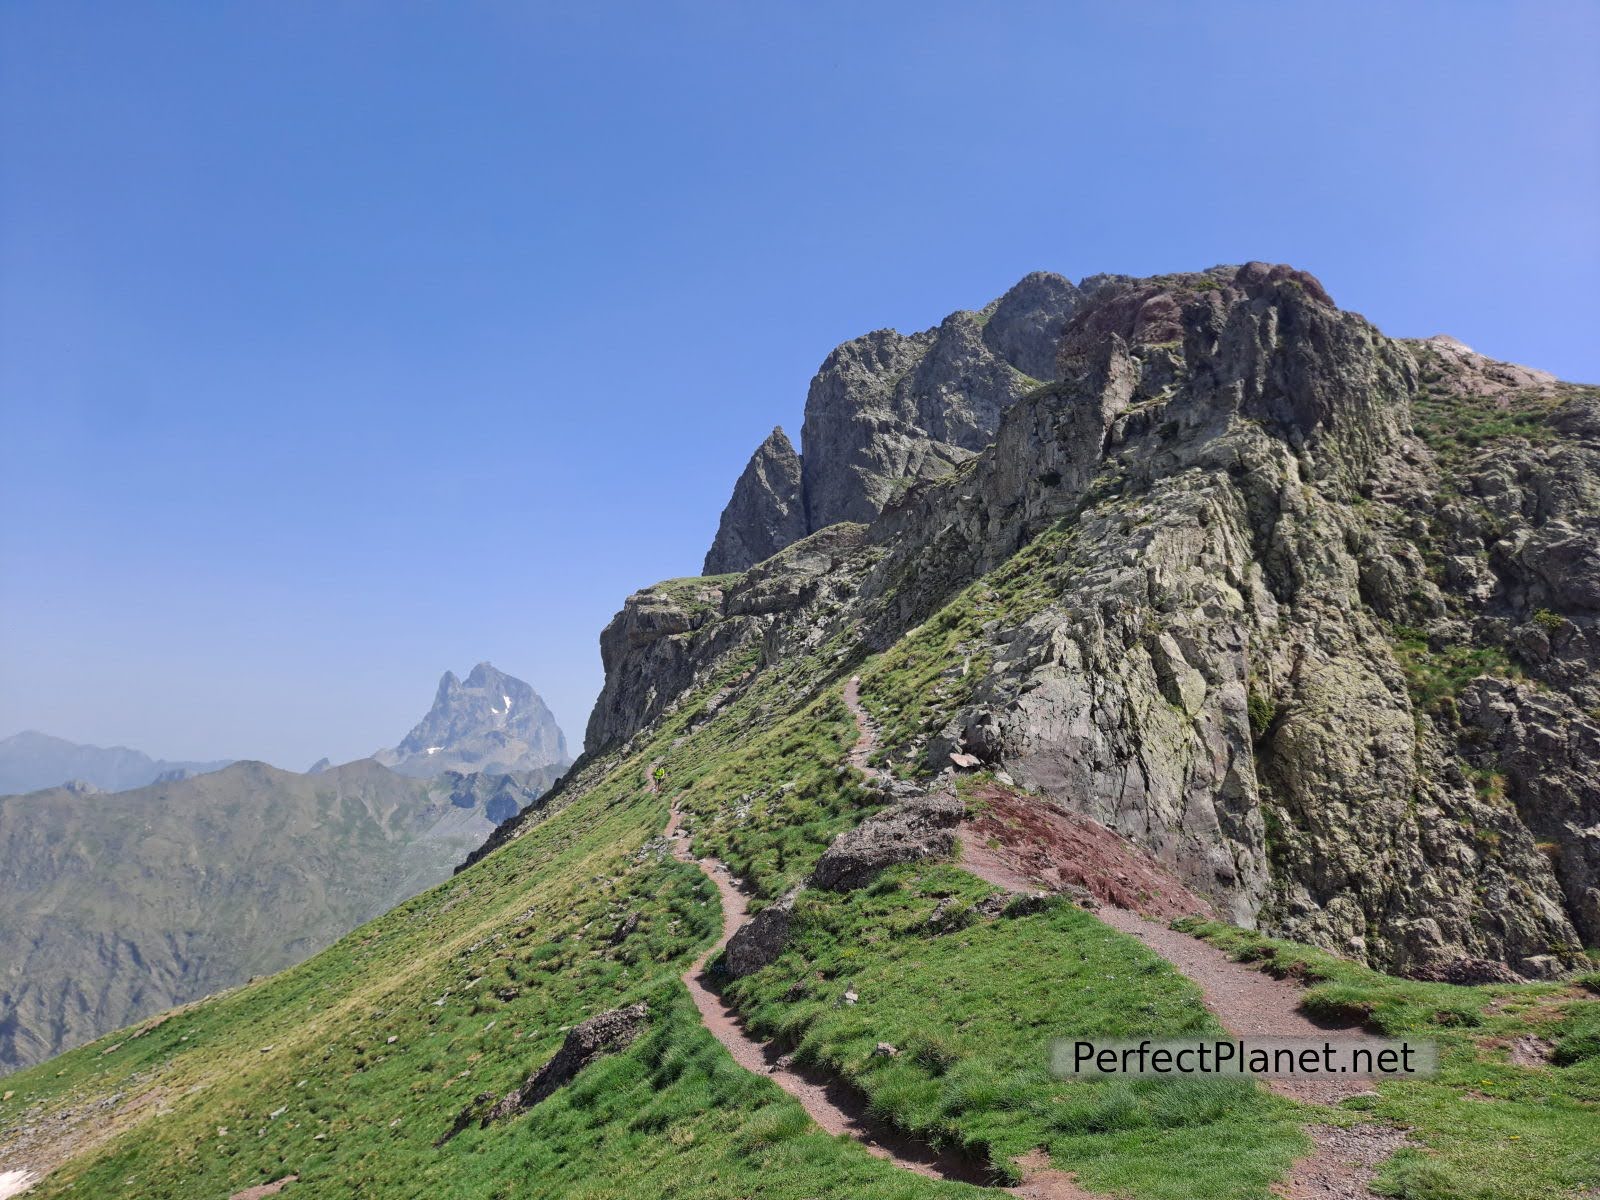 Anayet peak